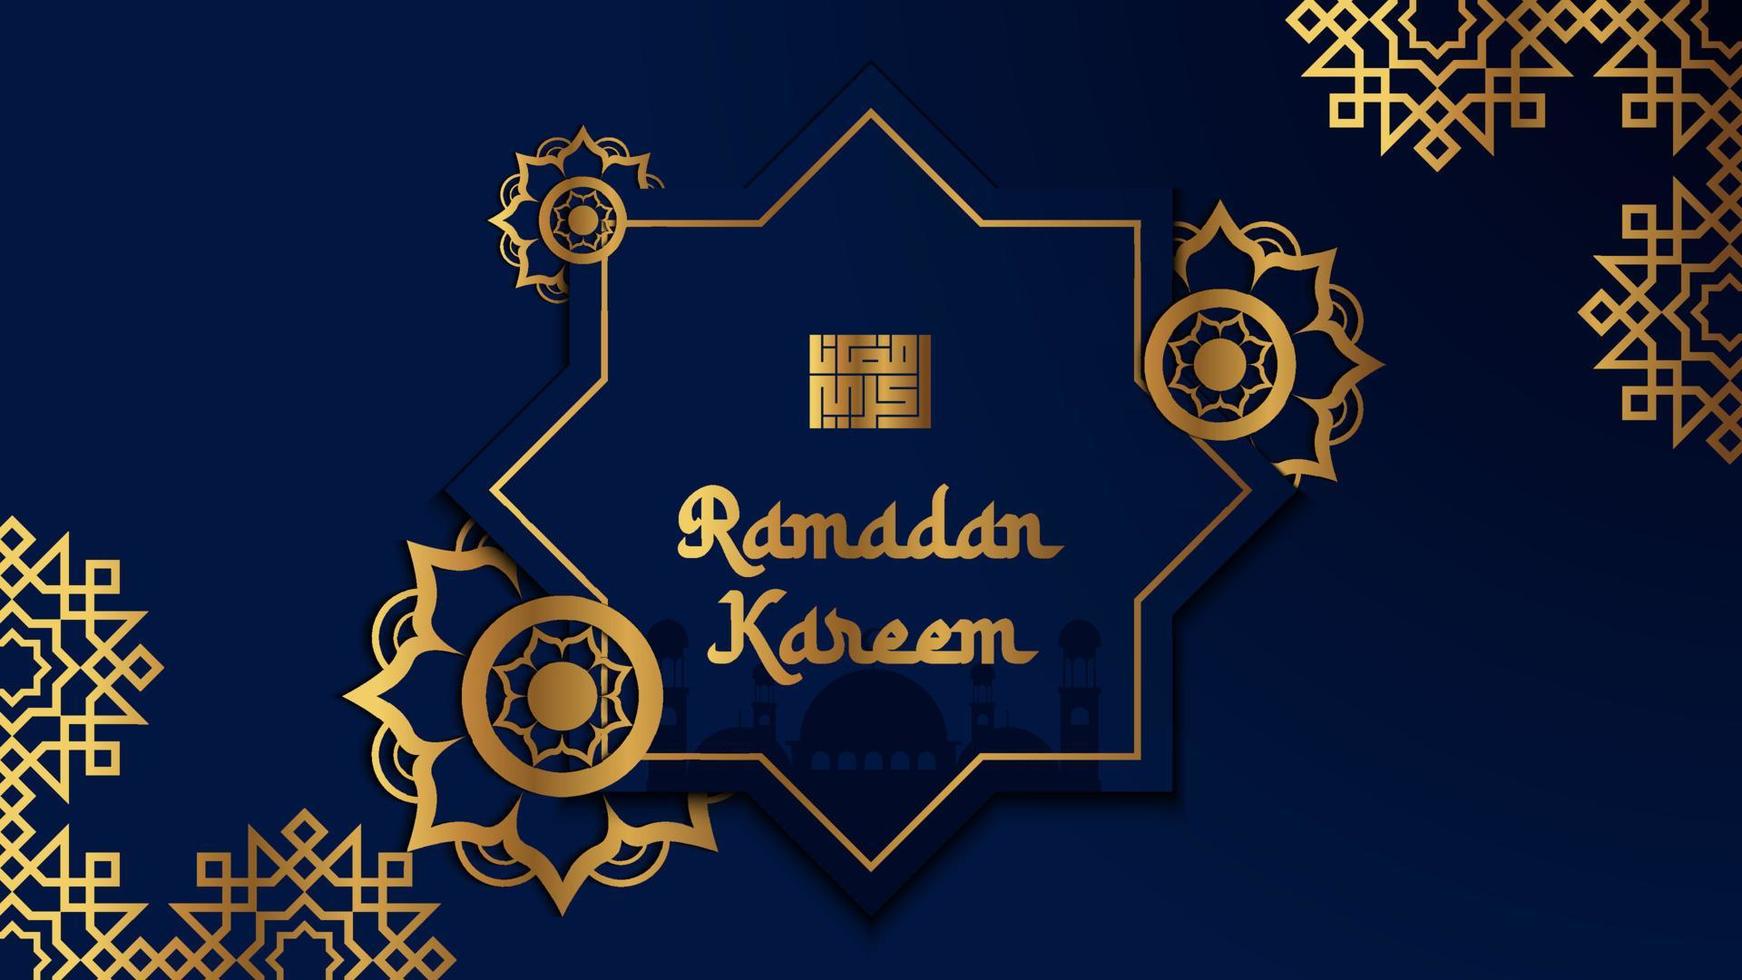 vettore di sfondo ramadan di lusso